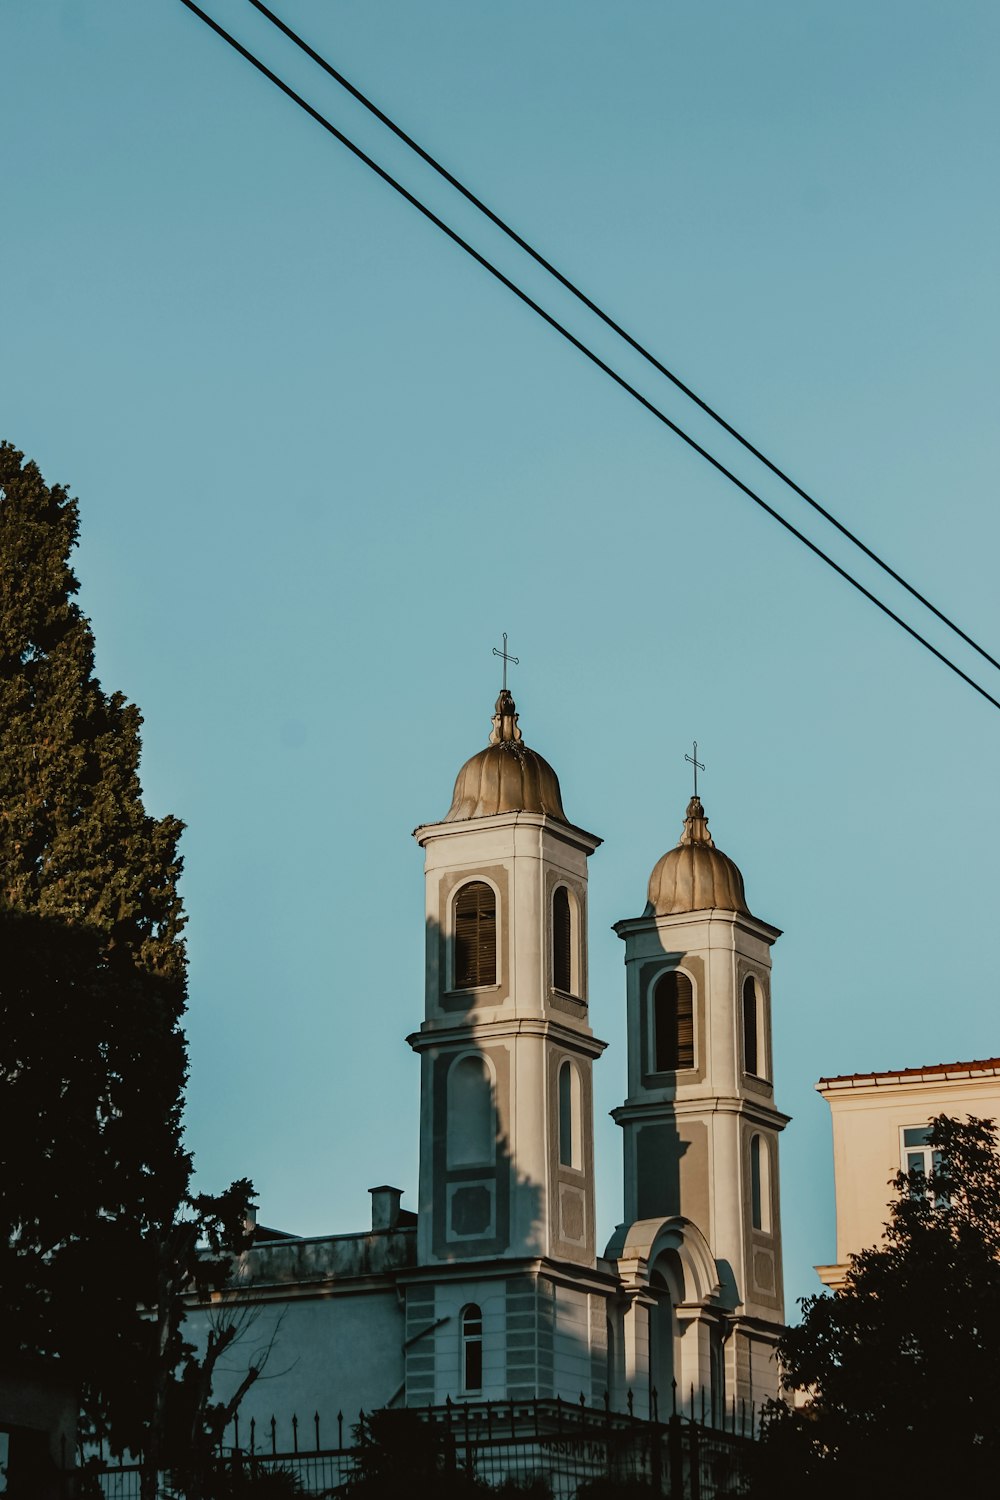 Chiesa in cemento bianco e marrone